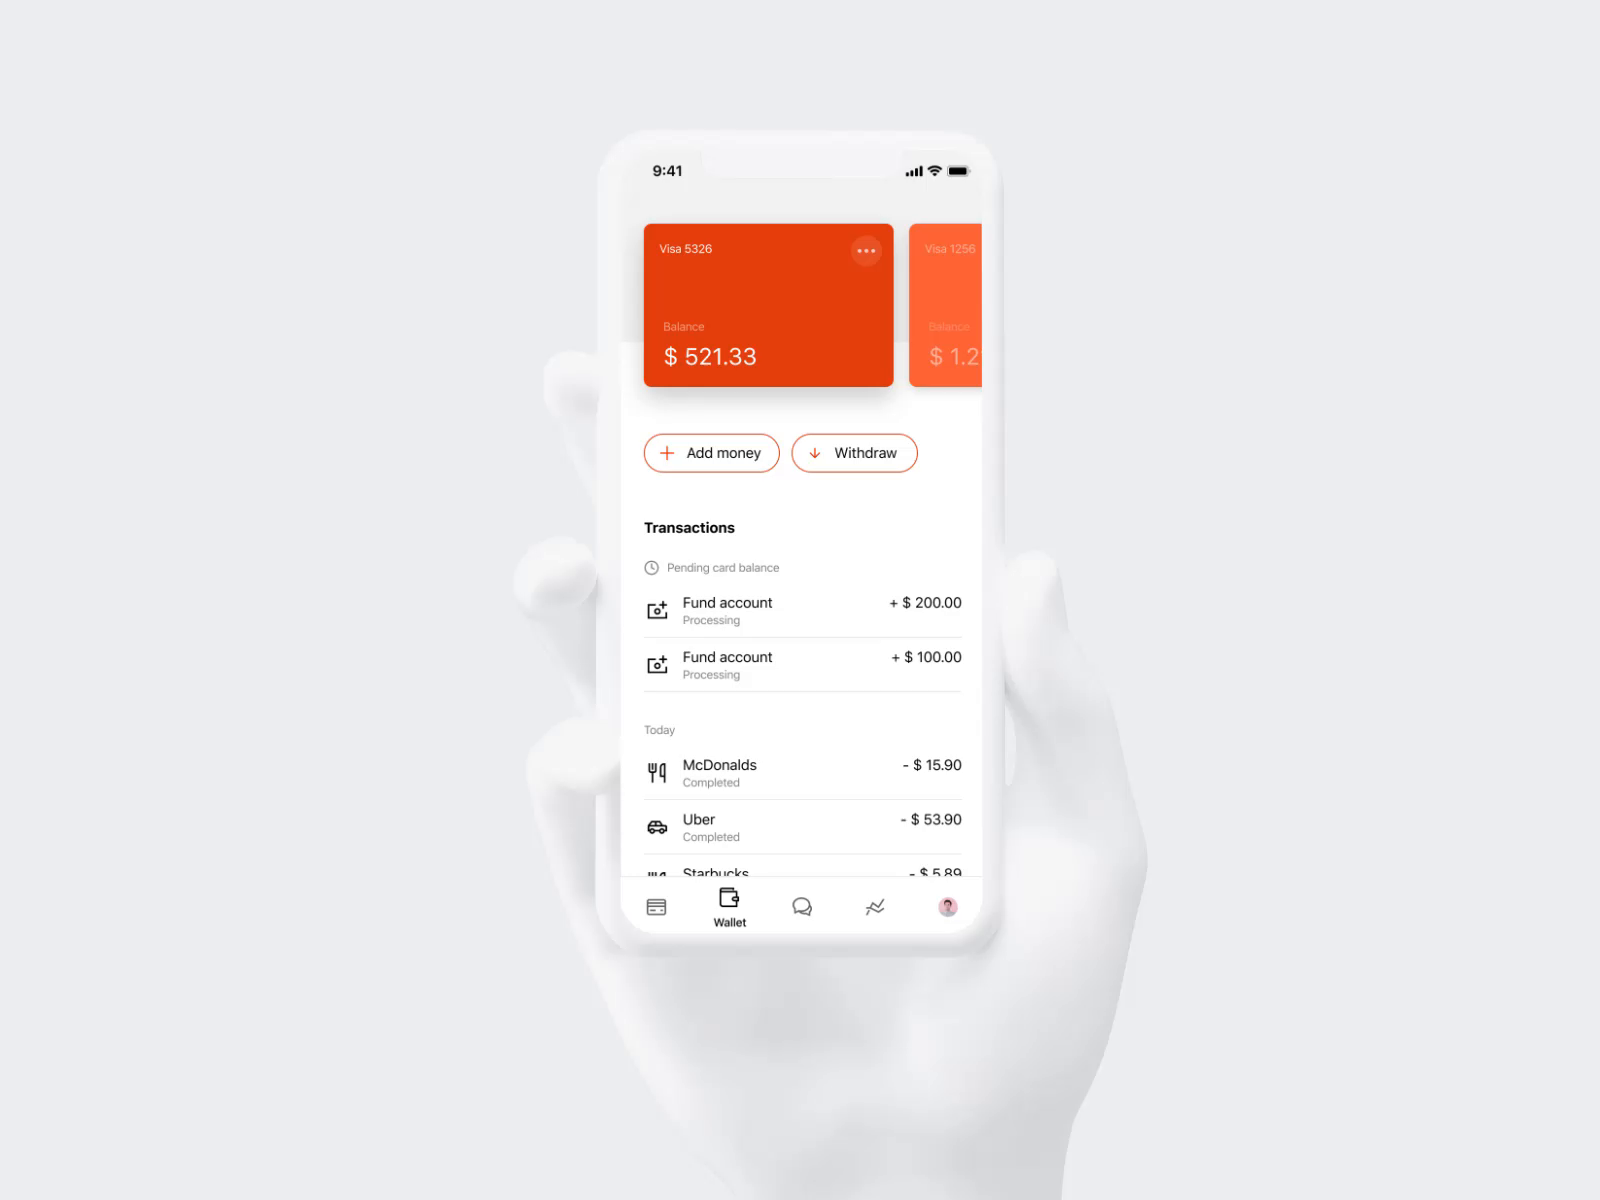 Xapo app - 2019 concept by Contrast Studio on Dribbble